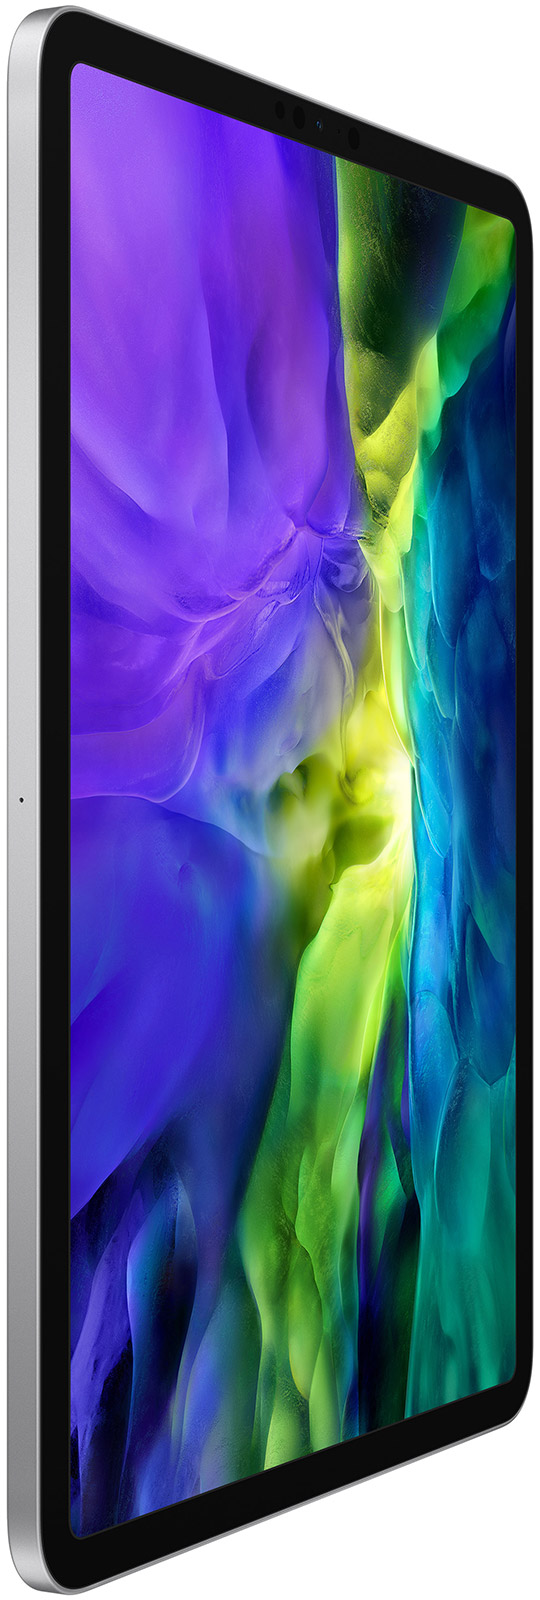 DEMO-Apple-11-iPad-Pro-WiFi-128-GB-Space-Grau-2020-02.jpg